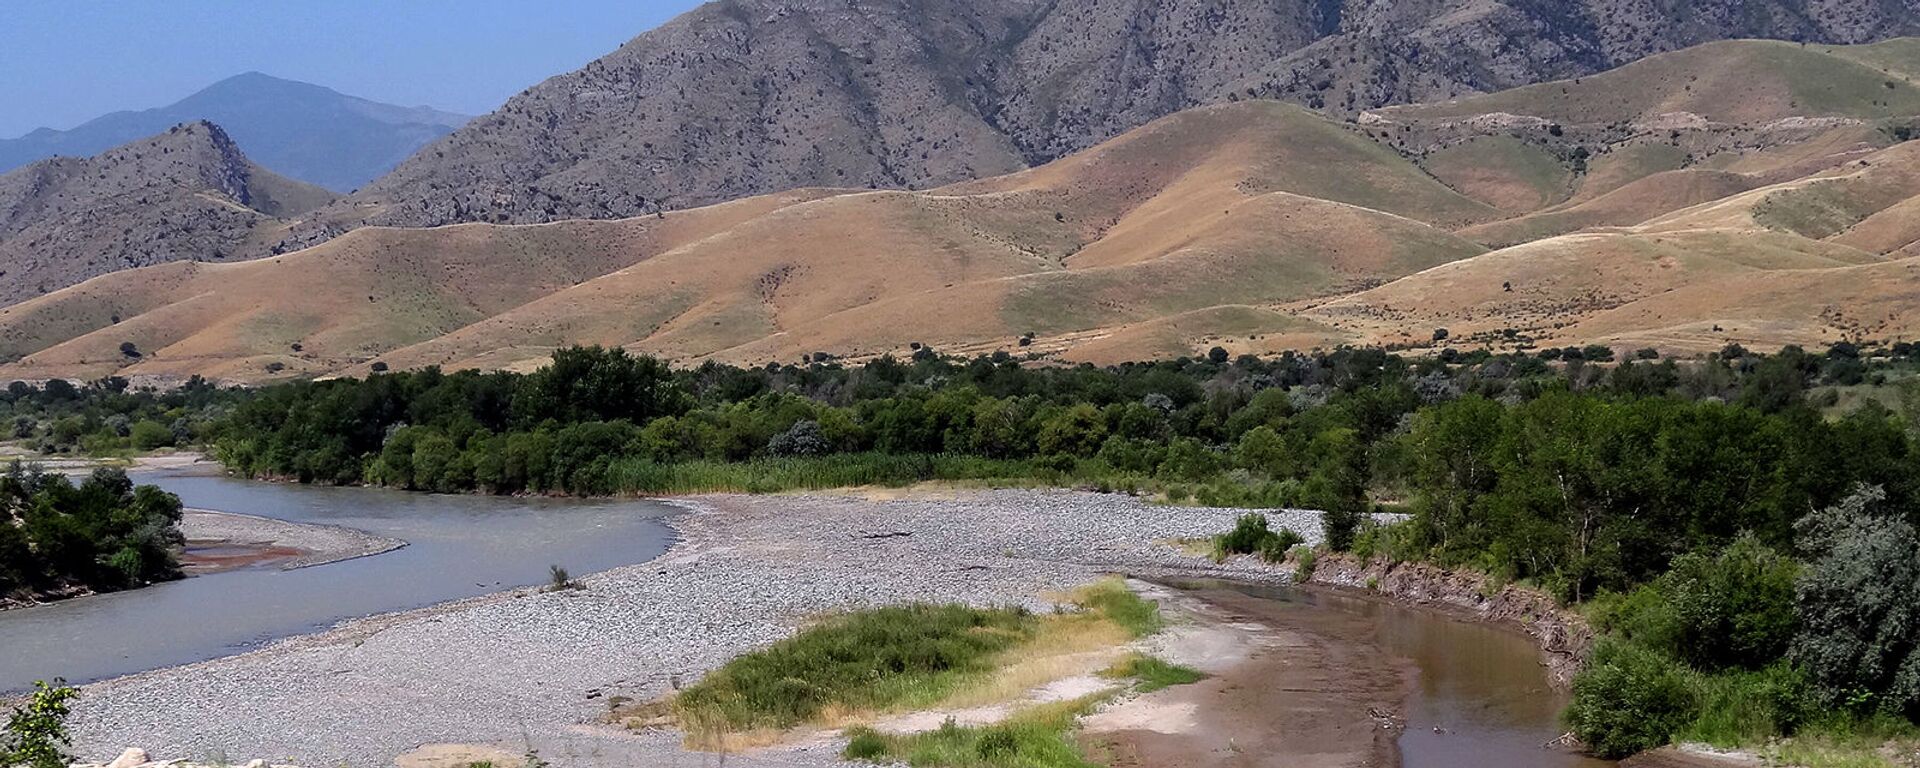 Река Аракс с границами между Карабахом, Ираном и Азербайджаном - Sputnik Արմենիա, 1920, 16.03.2021